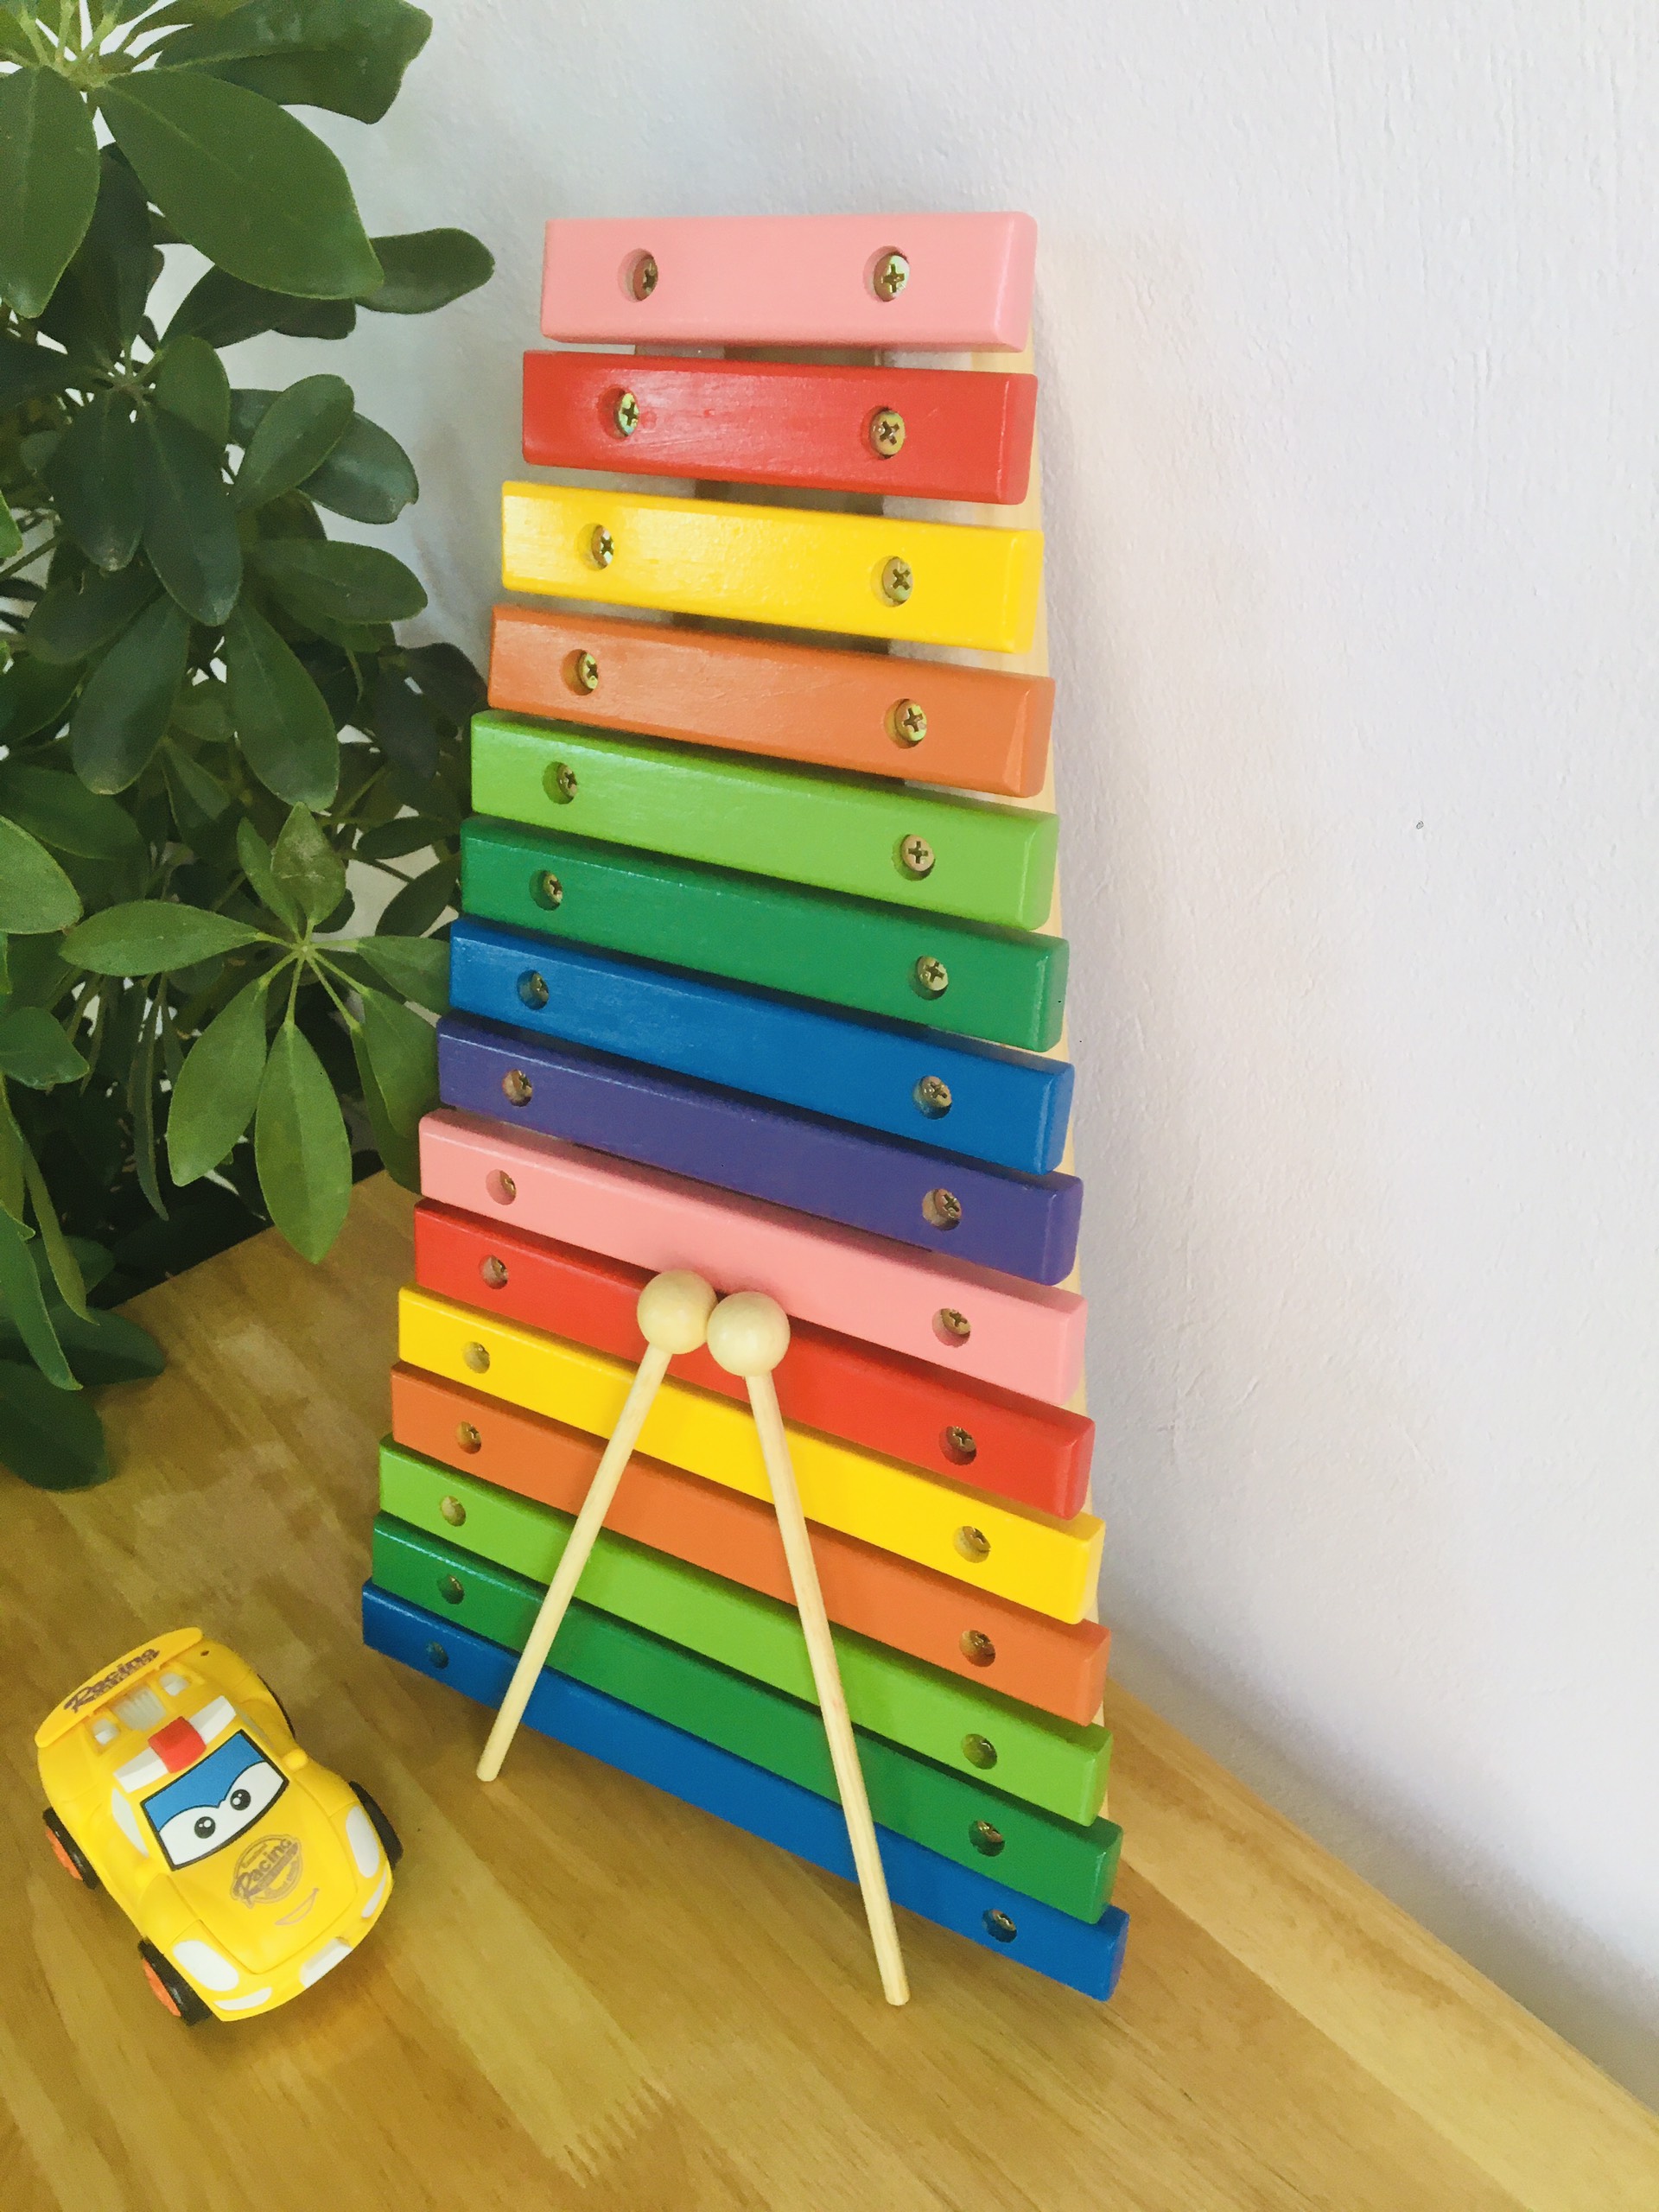 Đồ chơi đàn xylophone gỗ 15 thanh loại to cao cấp, đồ chơi đàn gỗ nhạc cụ giải trí rèn kĩ năng giáo dục cho bé